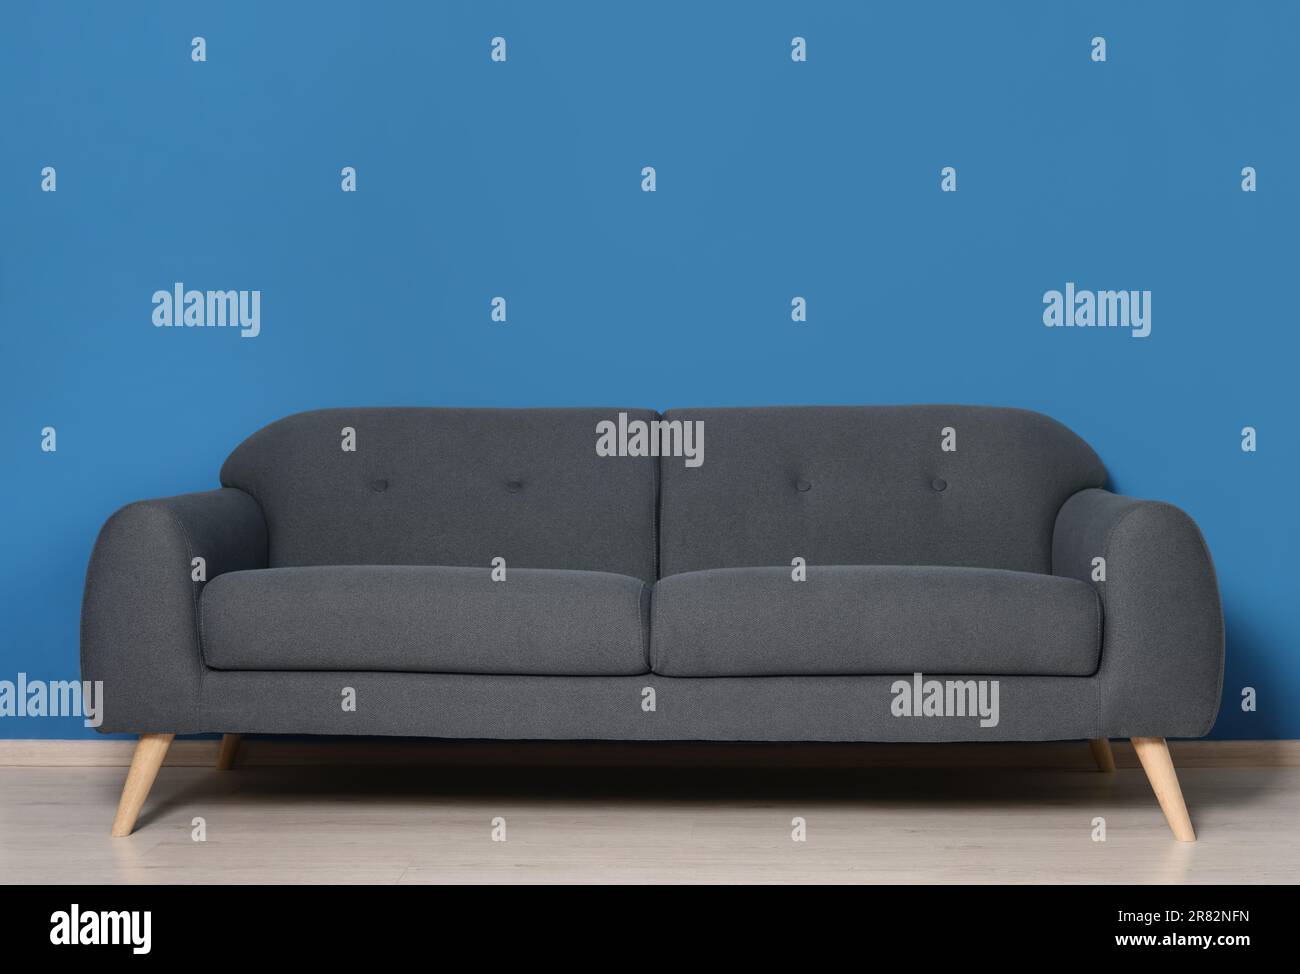 Élégant canapé gris près du mur bleu dans la chambre. Design intérieur Banque D'Images